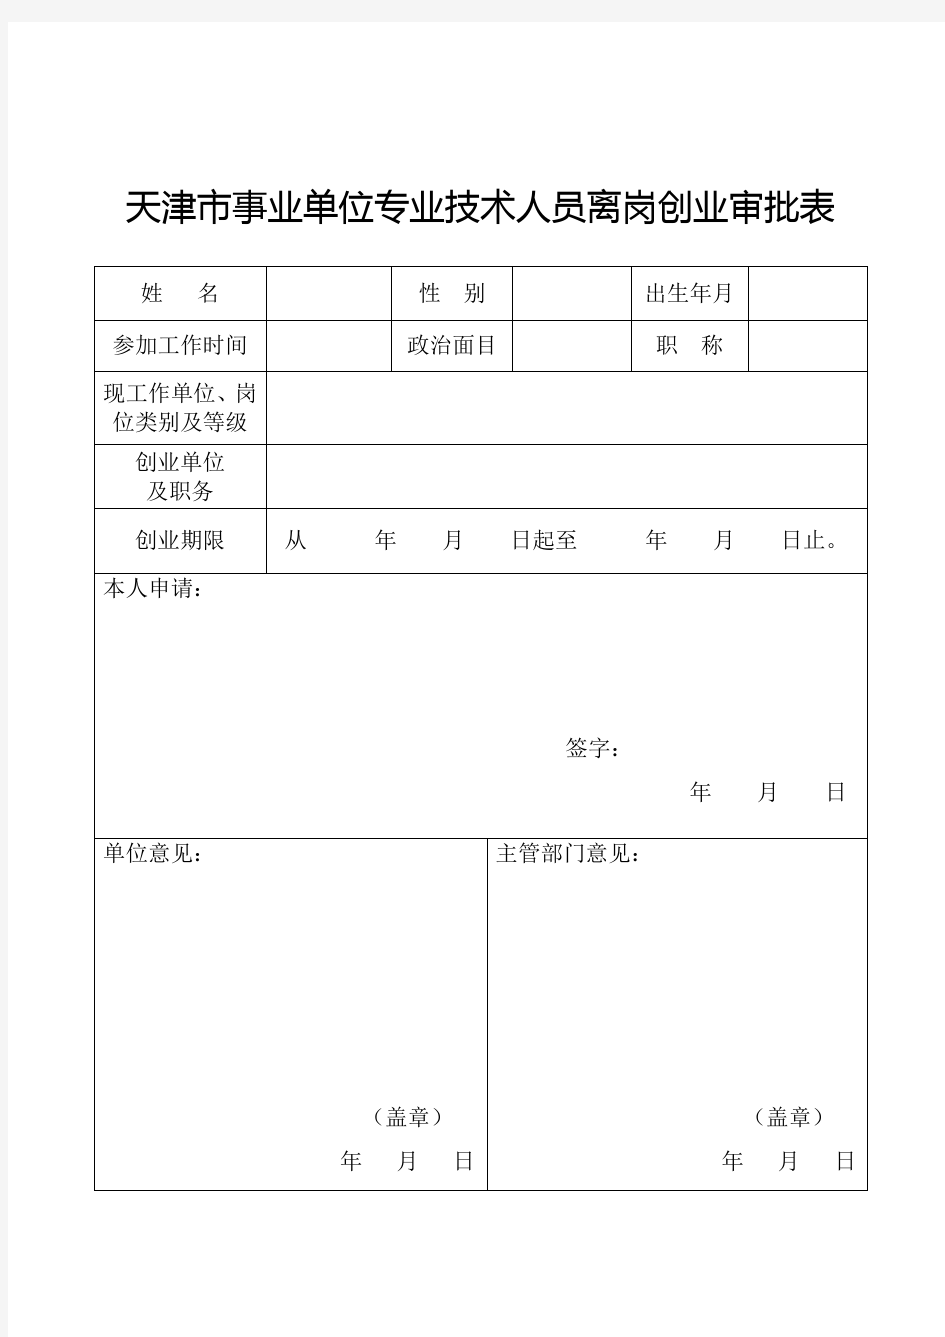 天津事业单位专业技术人员离岗创业审批表